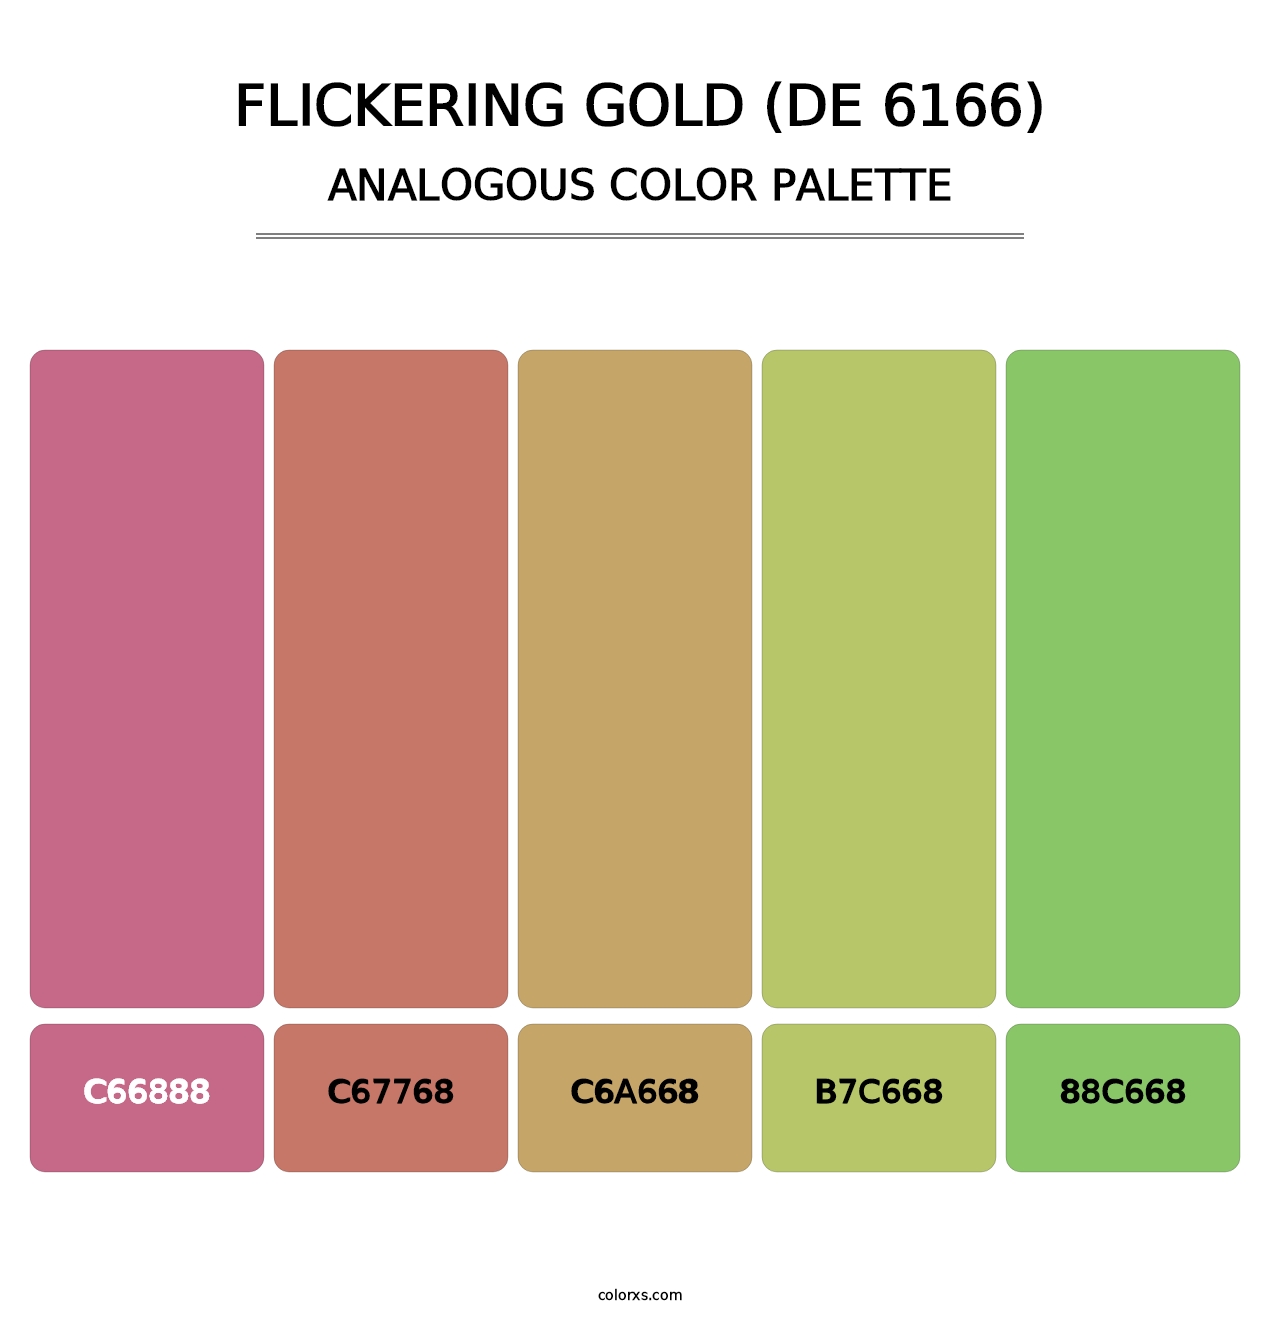 Flickering Gold (DE 6166) - Analogous Color Palette